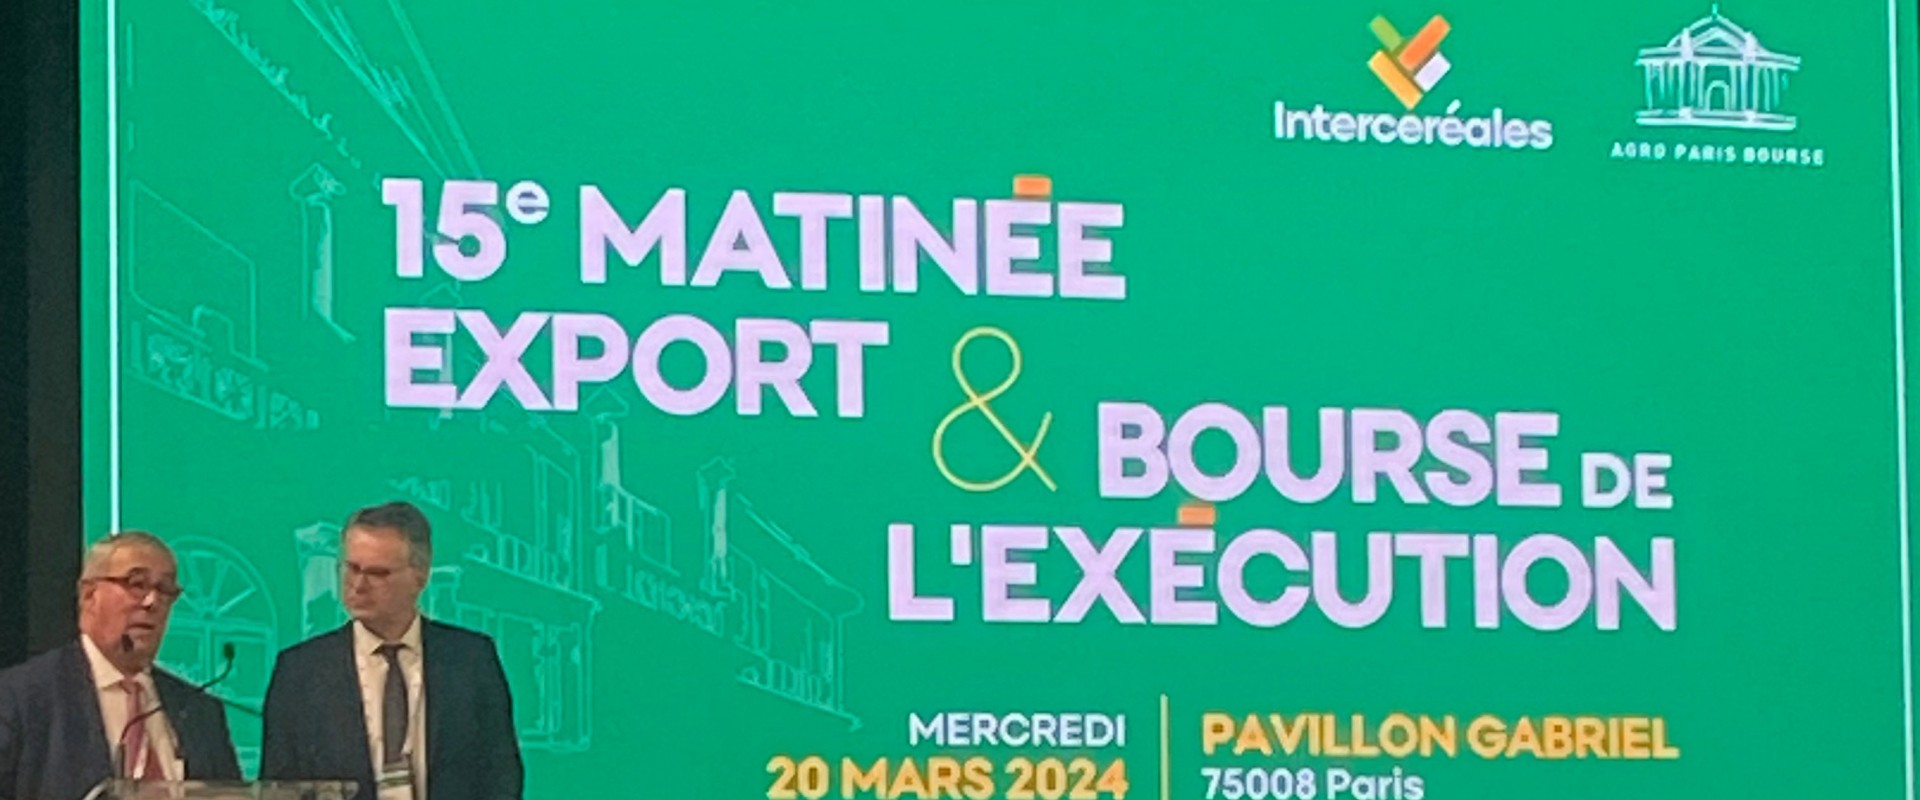 Nantes Saint-Nazaire Port participa en la Matinée Export Intercéréales